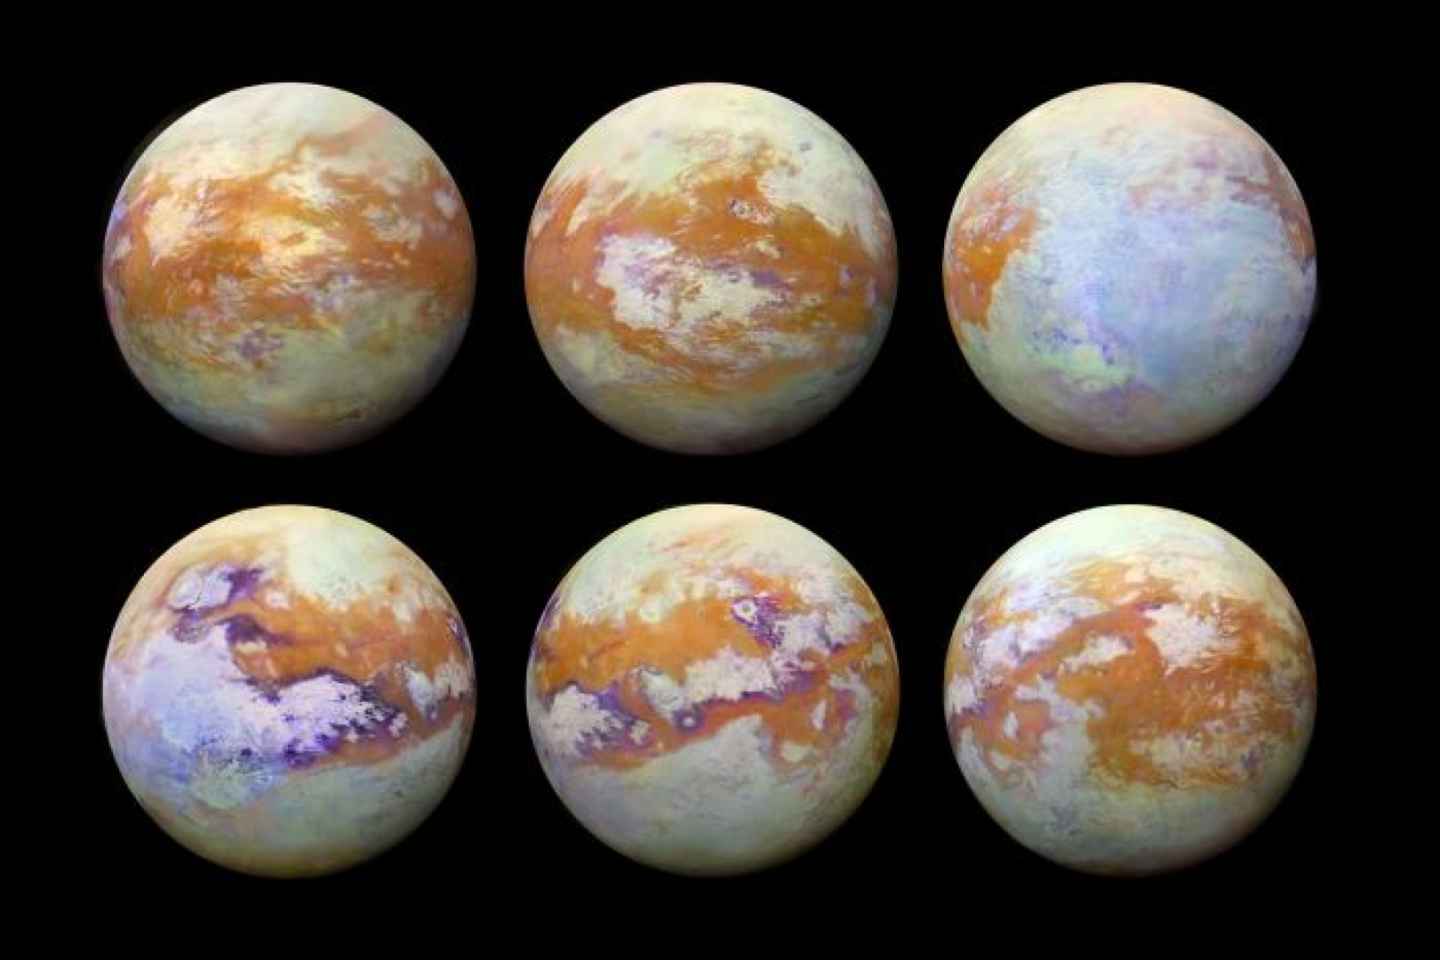  Infraraudoniesiems spinduliams atmosfera yra permatoma, ir pažiūrėjus šiame ruože, atsiveria Titano paviršiaus įvairovė.<br> ©NASA/JPL-Caltech/Stéphane Le Mouélic, University of Nantes, Virginia Pasek, University of Arizona nuotr.